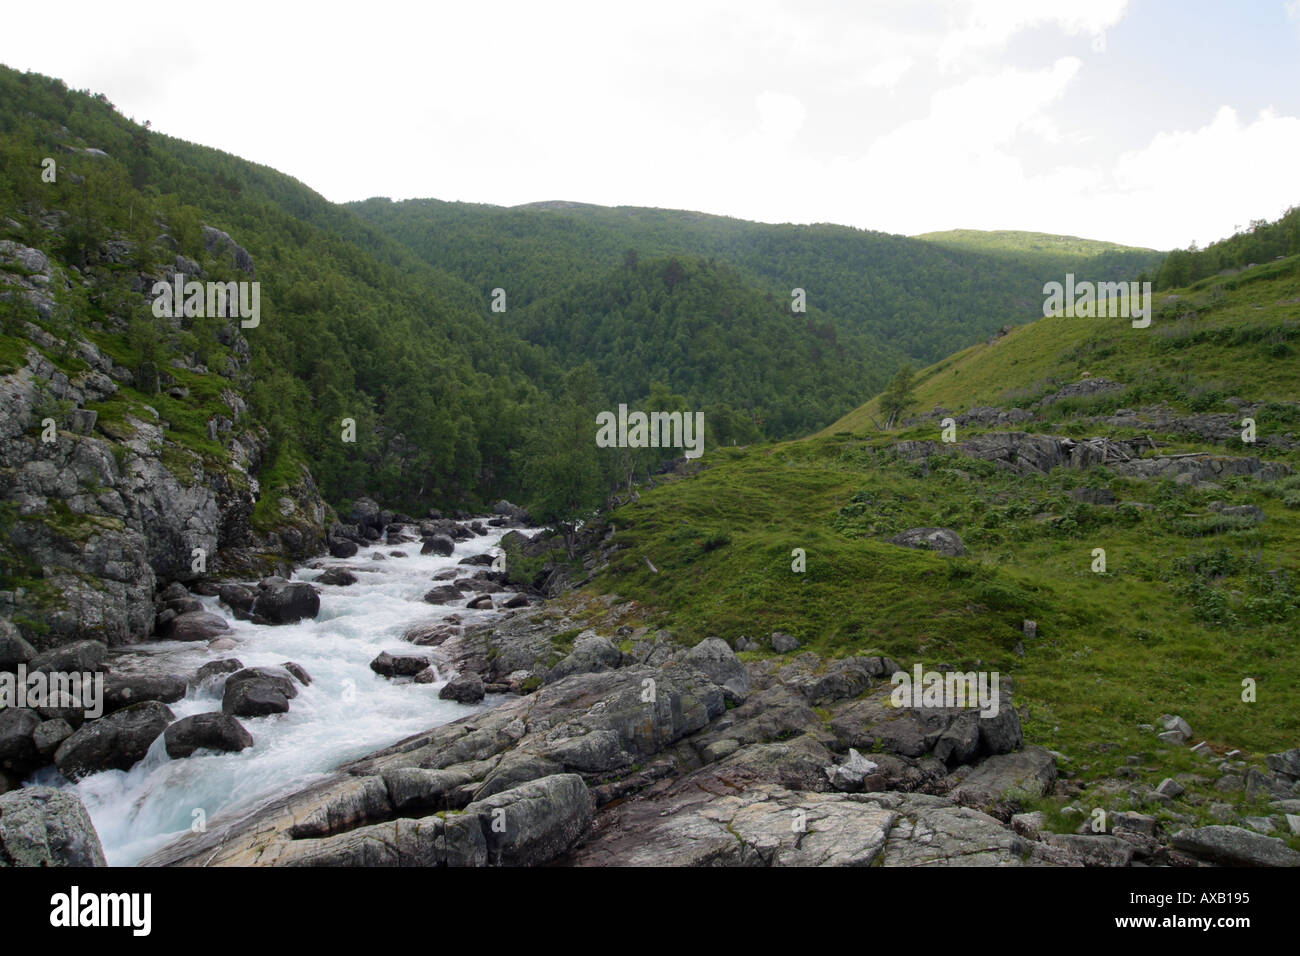 Un paysage montagneux avec un ruisseau qui la traverse Banque D'Images